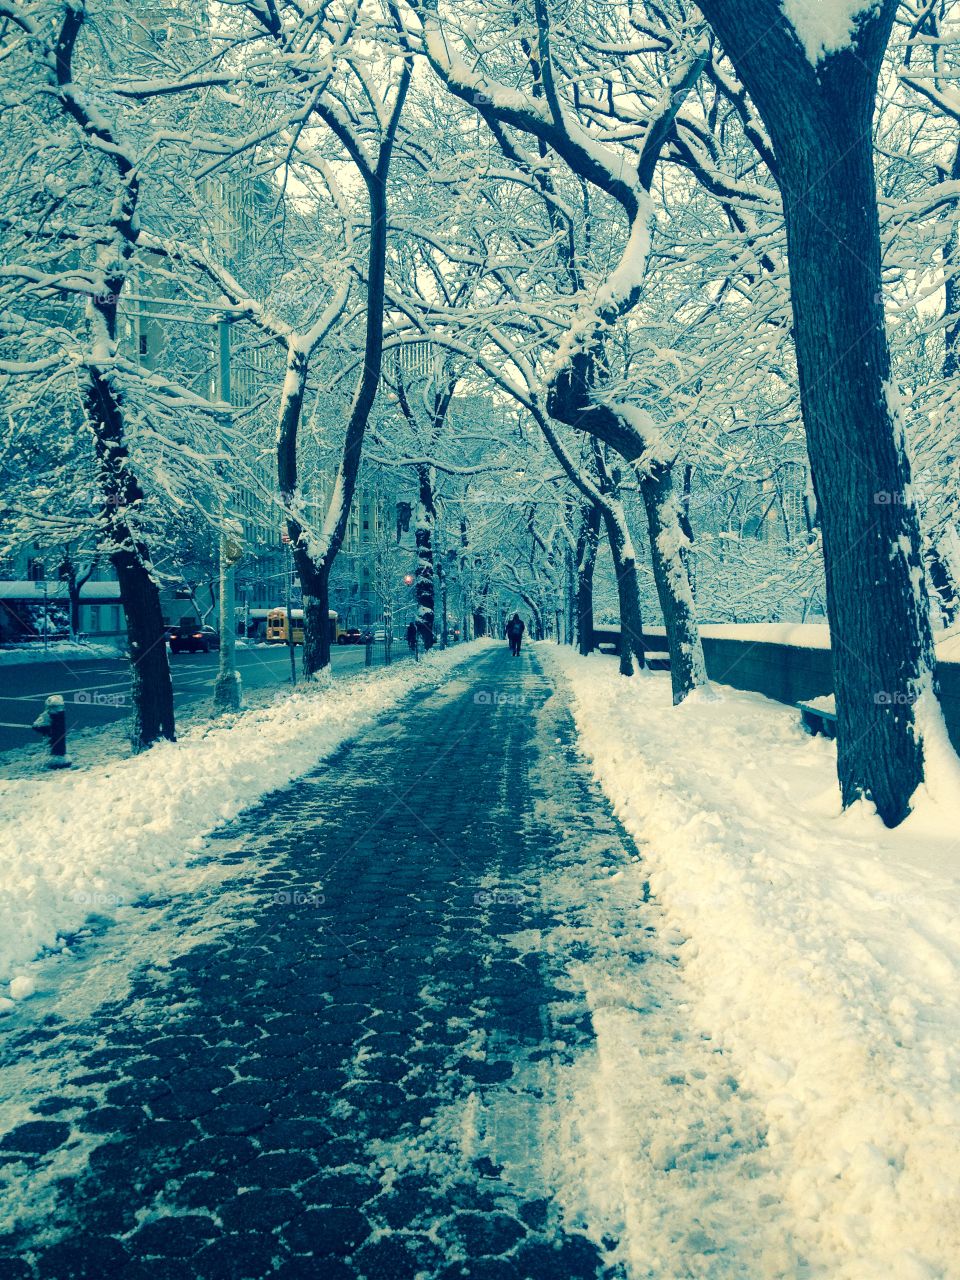 Snowy sidewalk in NYC